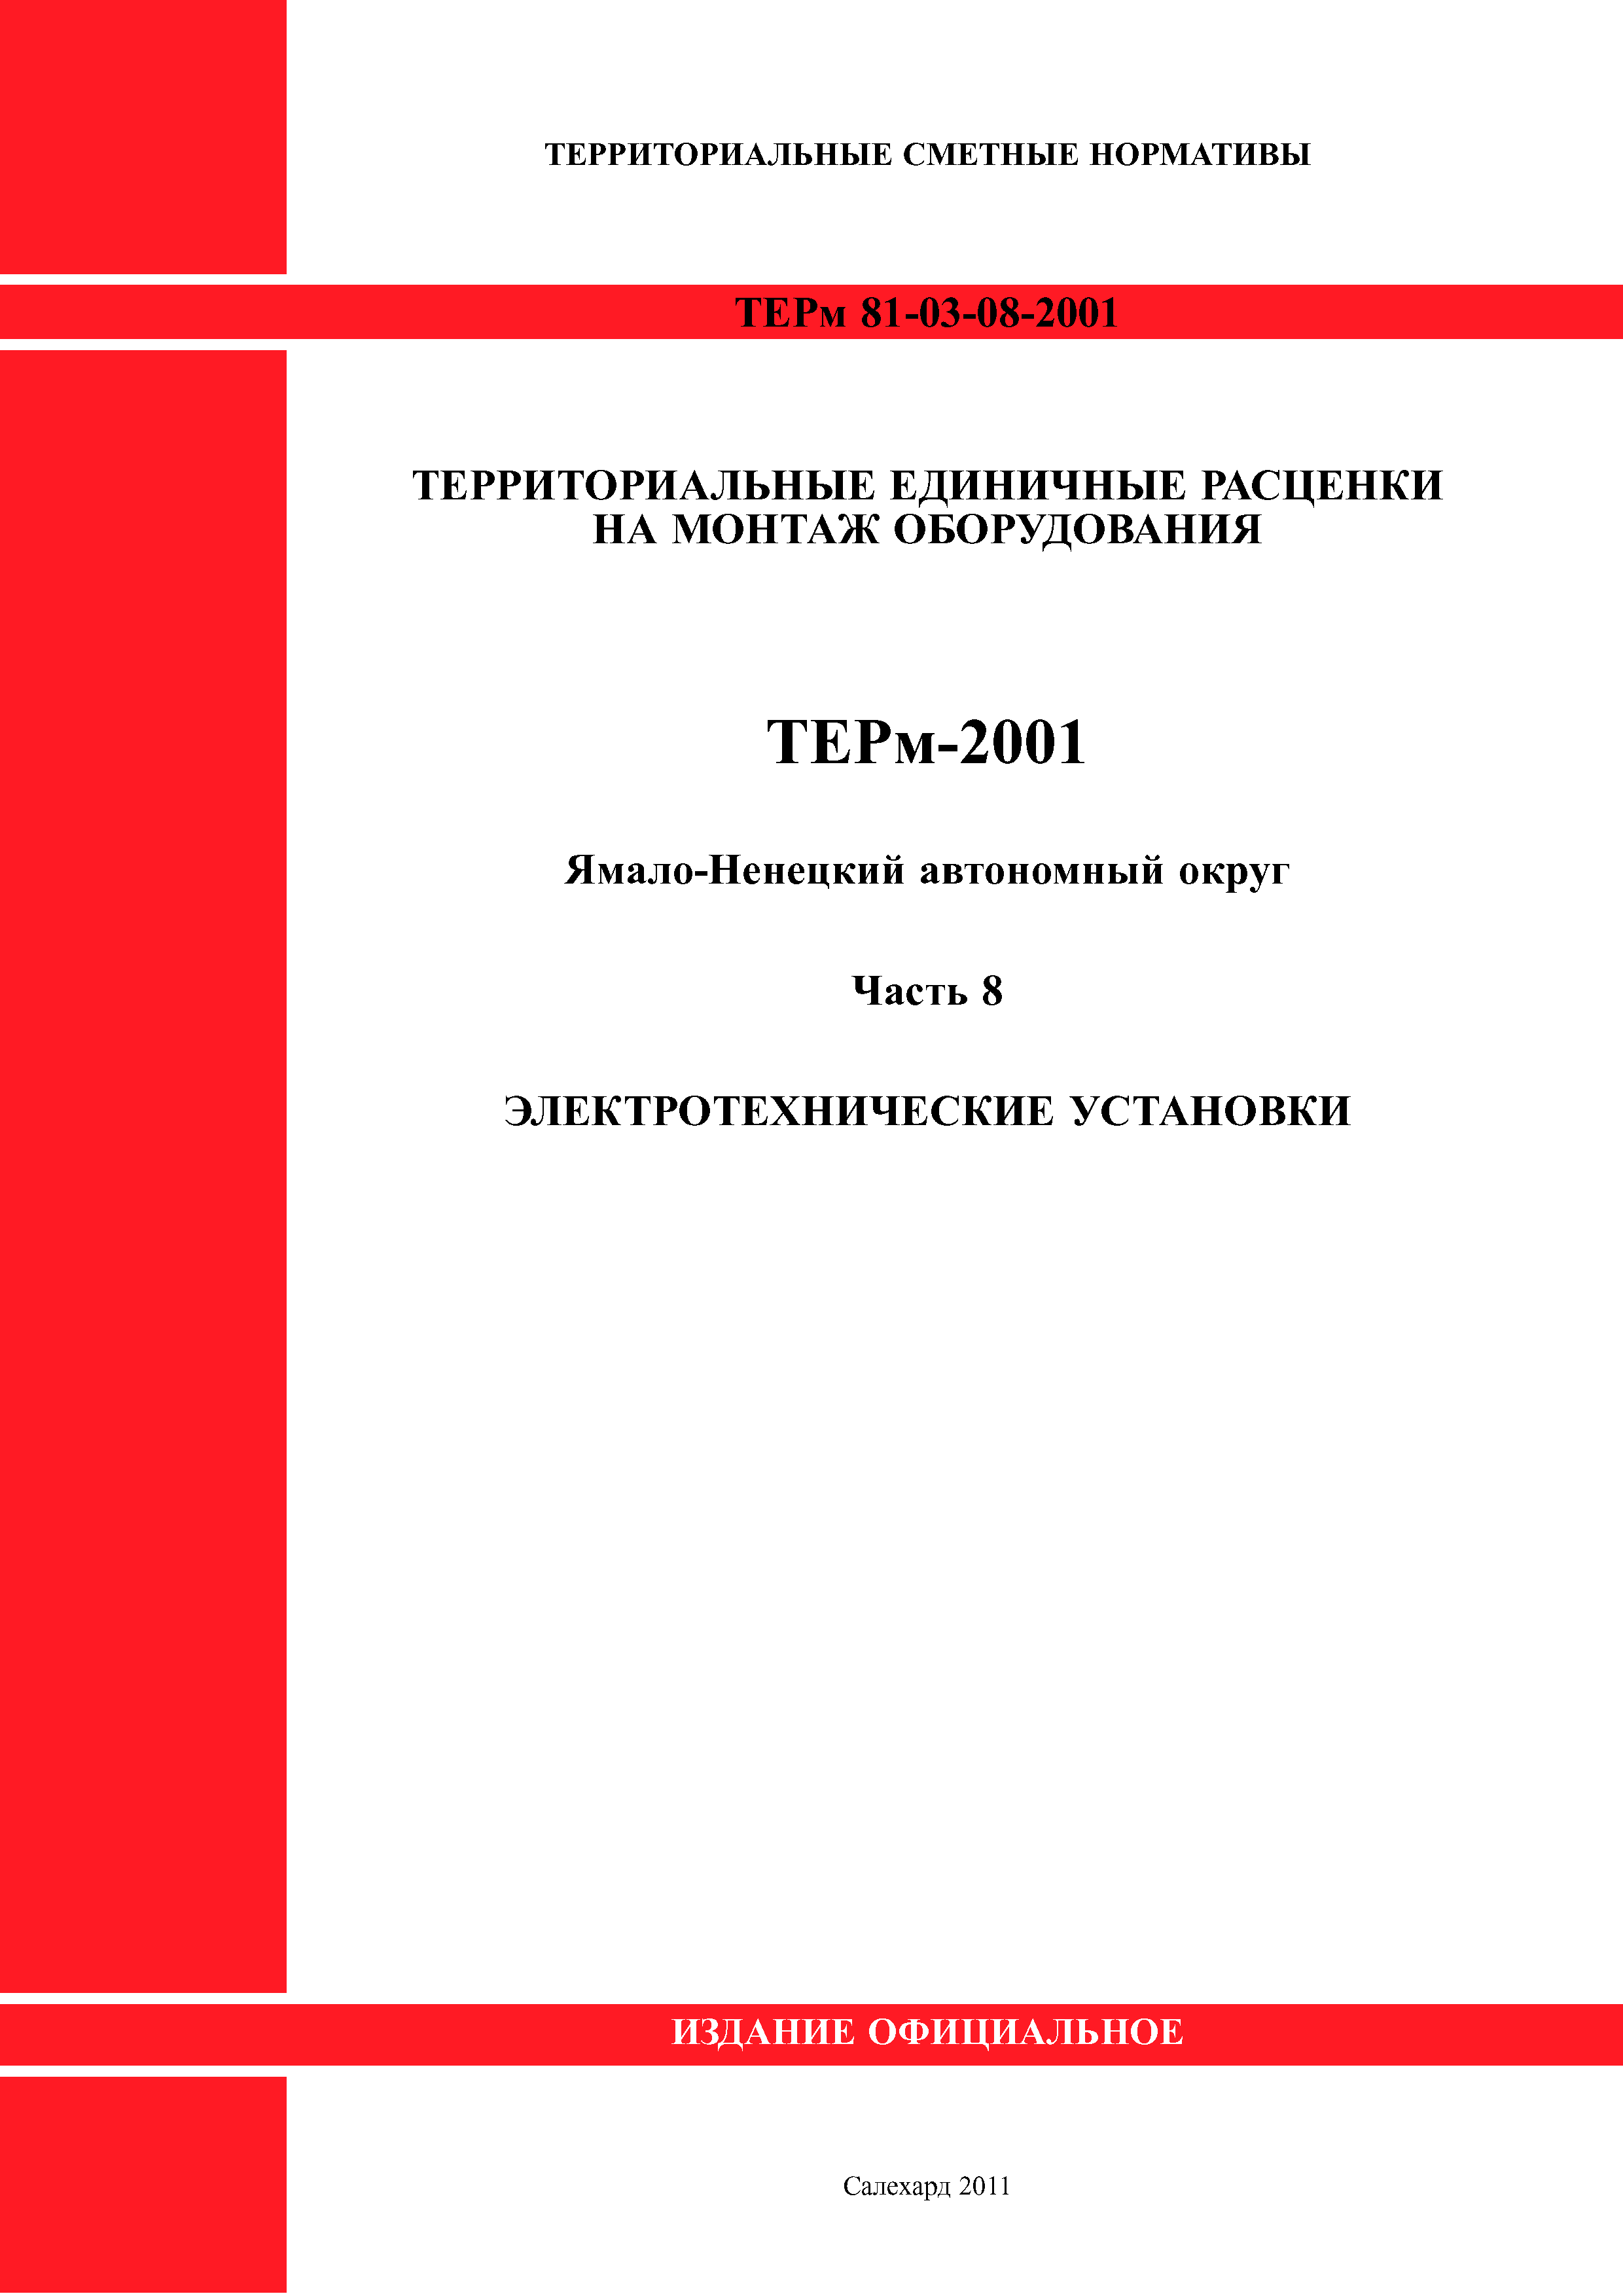 ТЕРм Ямало-Ненецкий автономный округ 08-2001